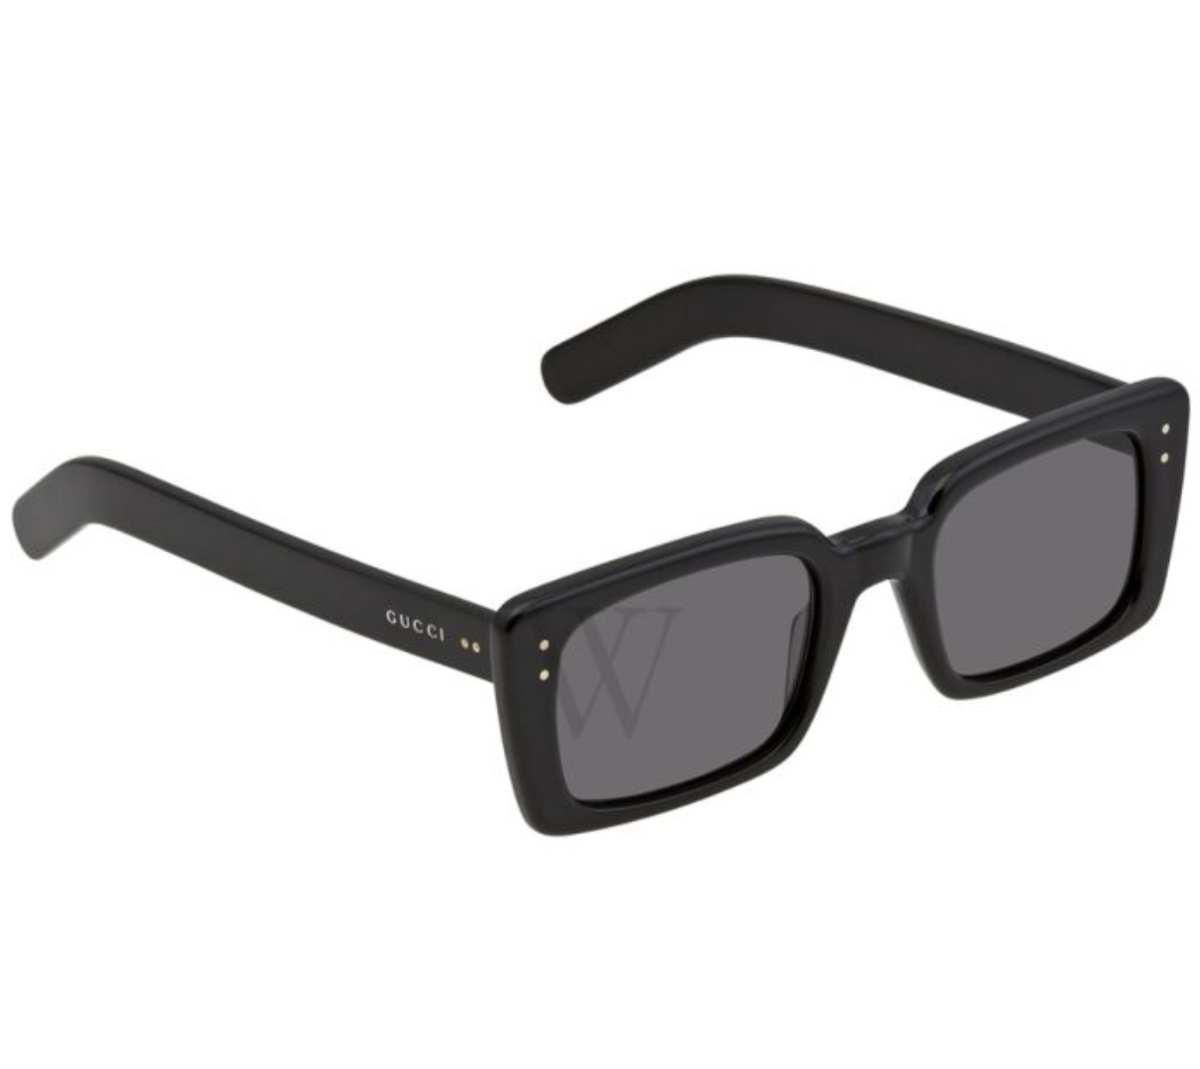 52mm Sunglasses